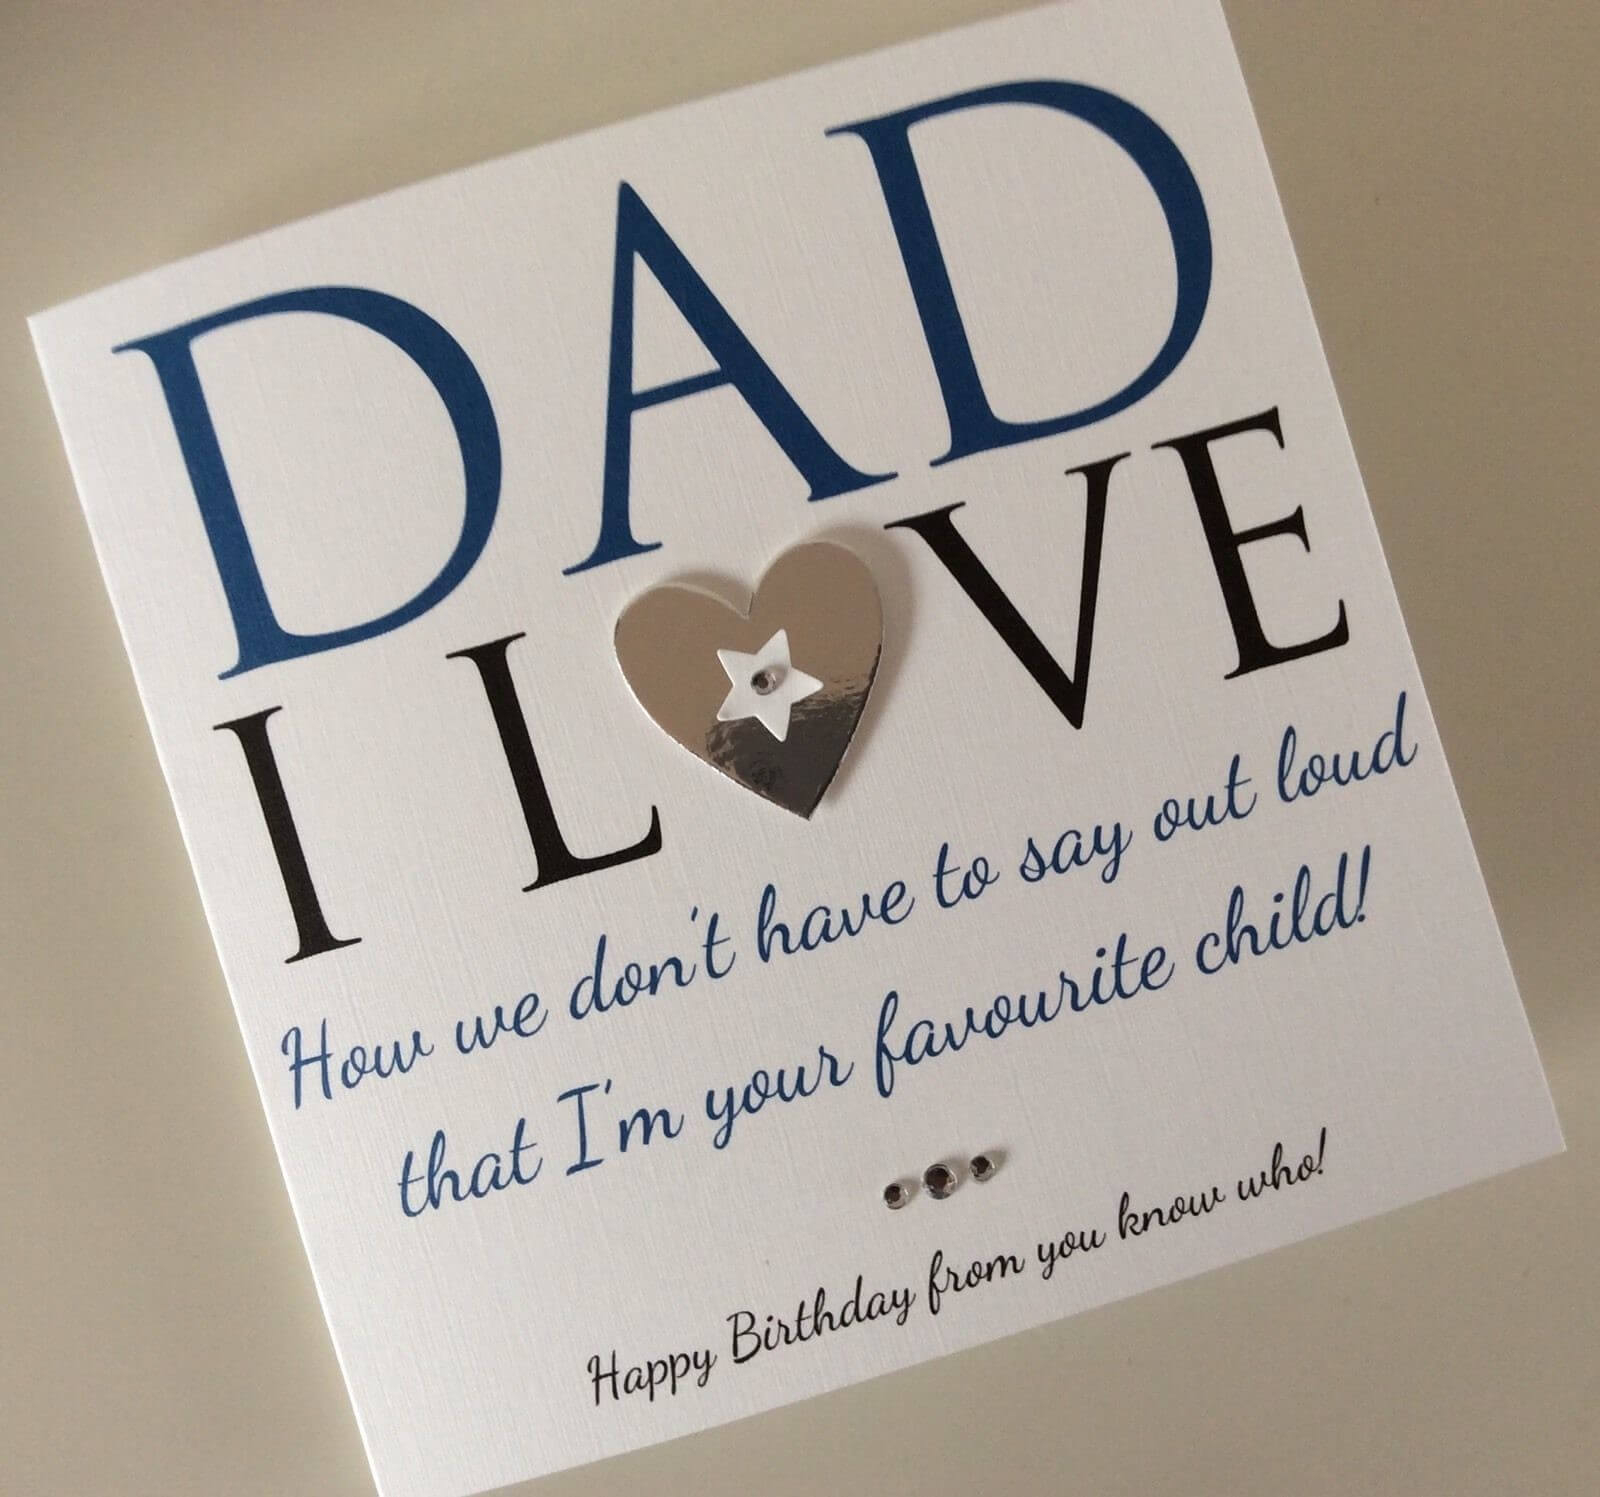 Happy Birthday Card Ideas For Dad 98 Birthday Greetings Cards For Dad Dad Birthday Card From Kids